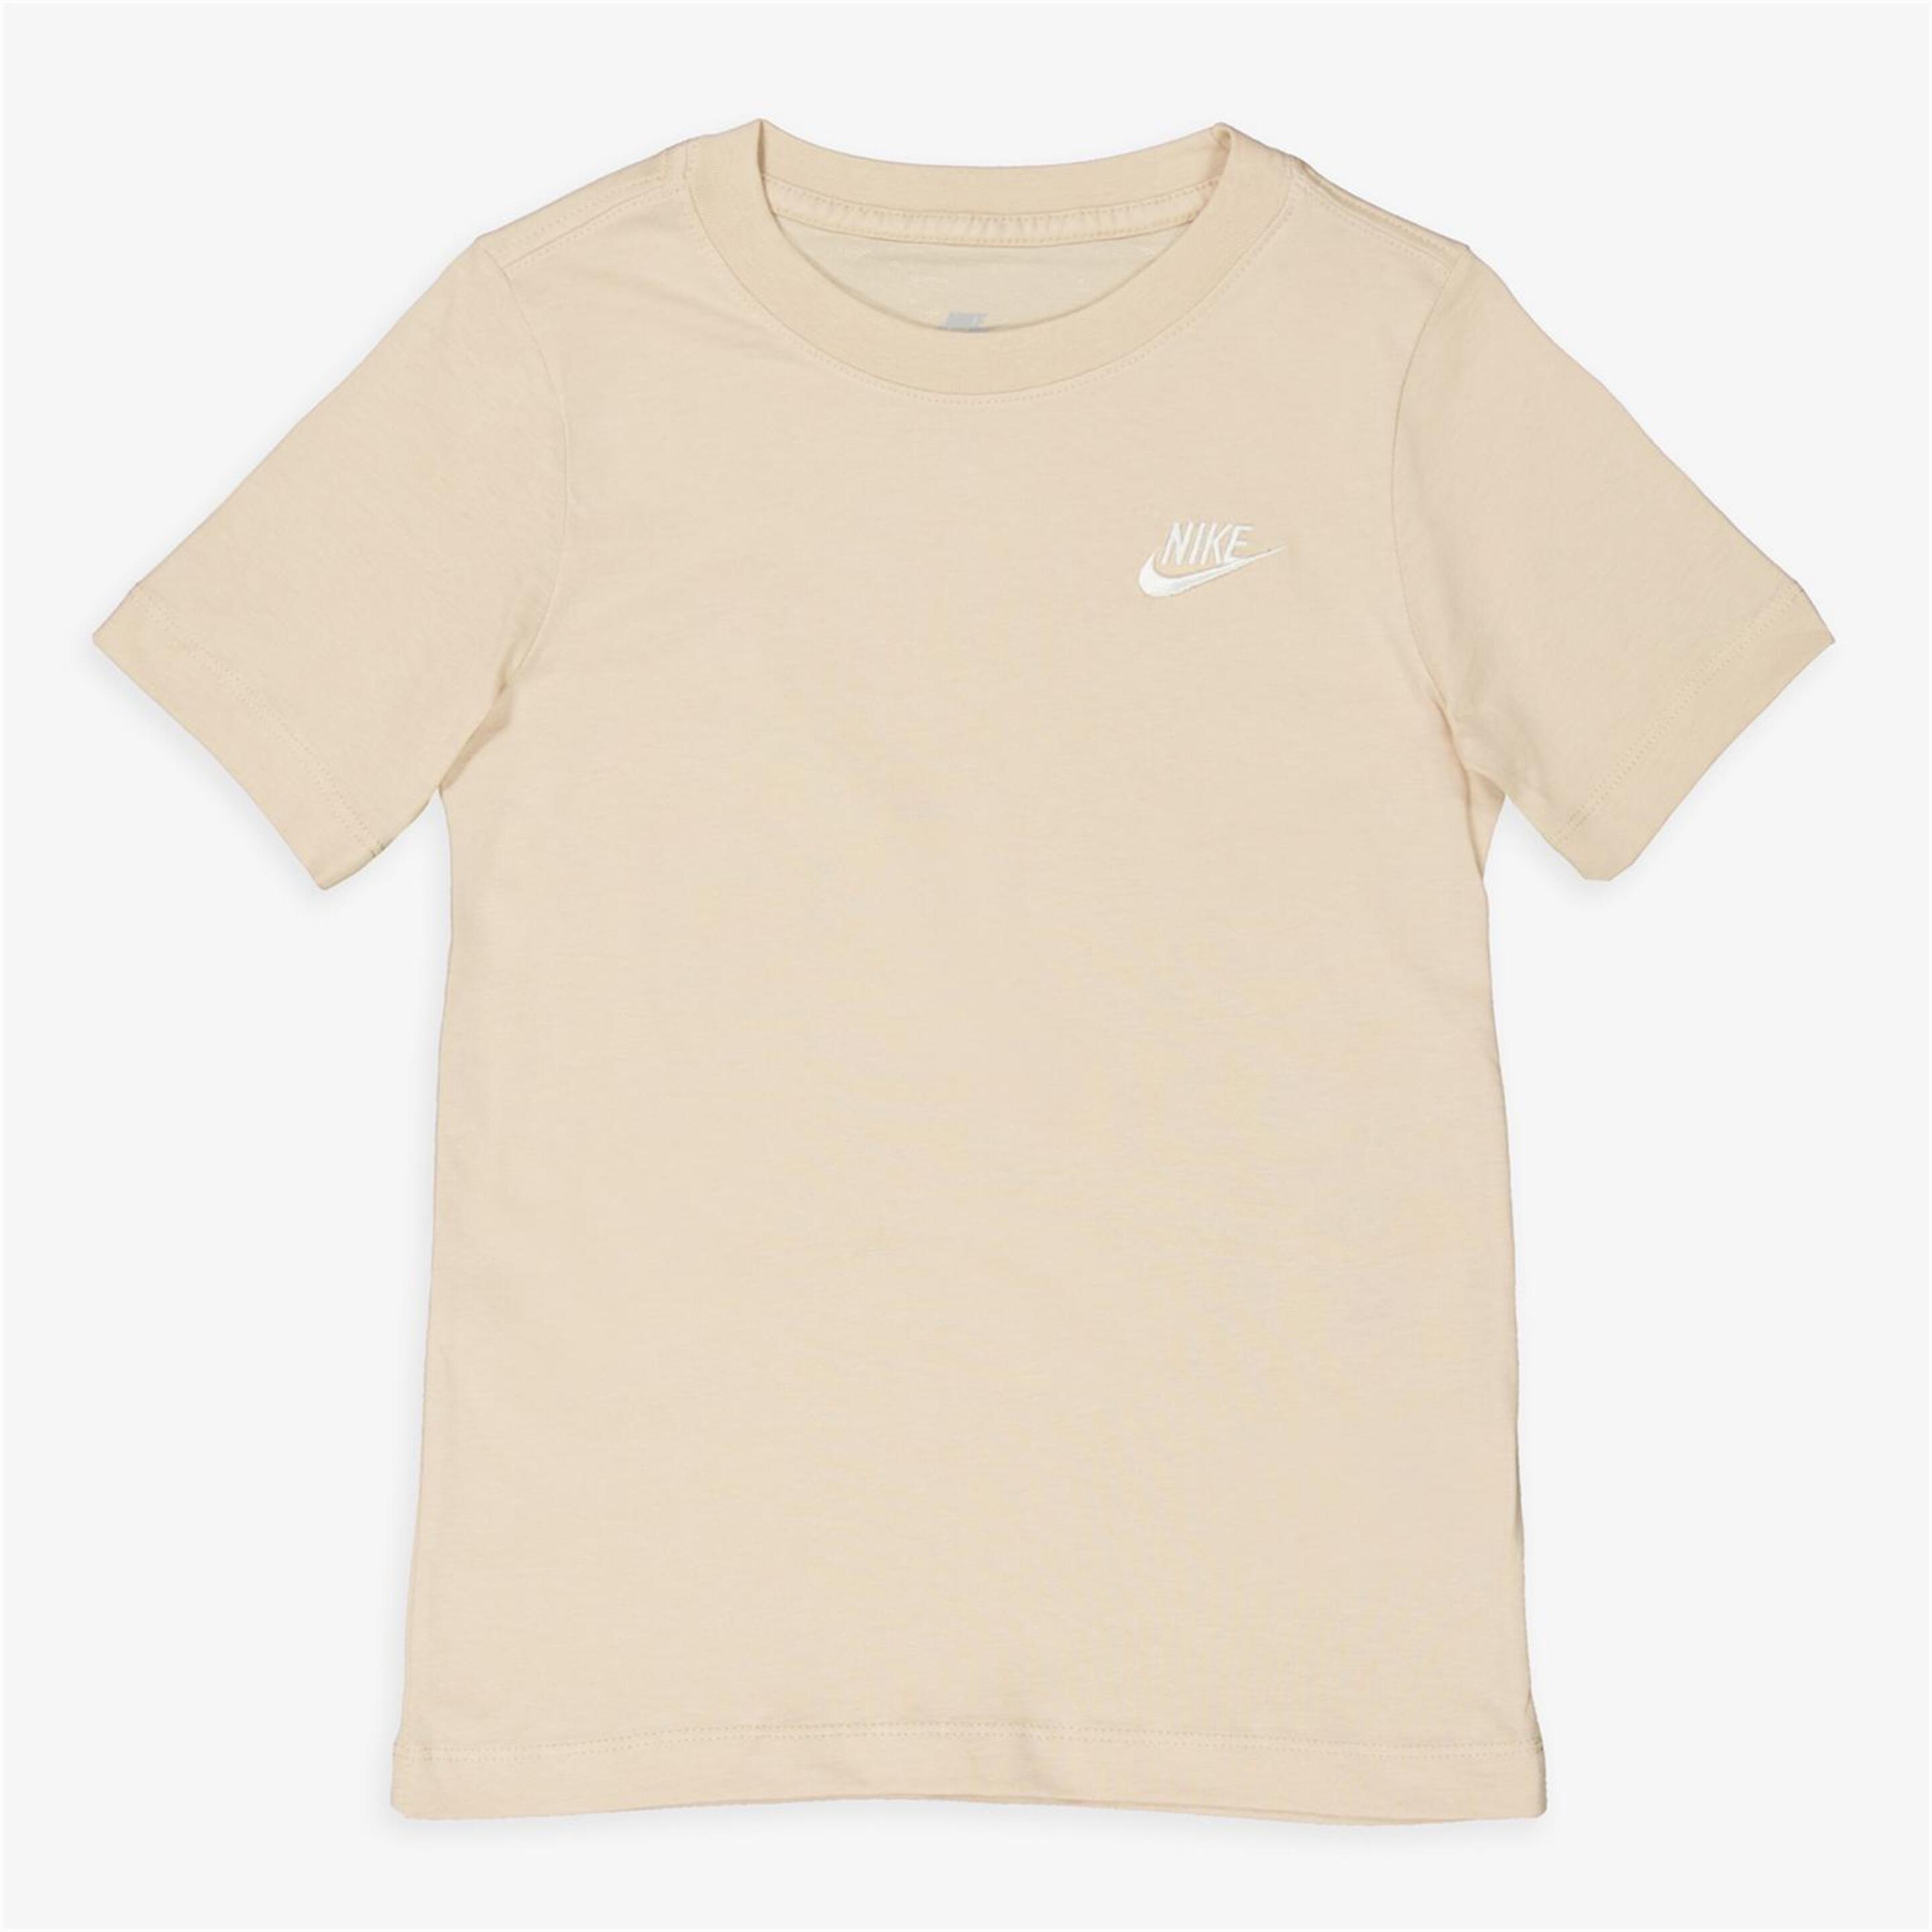 Camiseta Nike - marron - Camiseta Niño